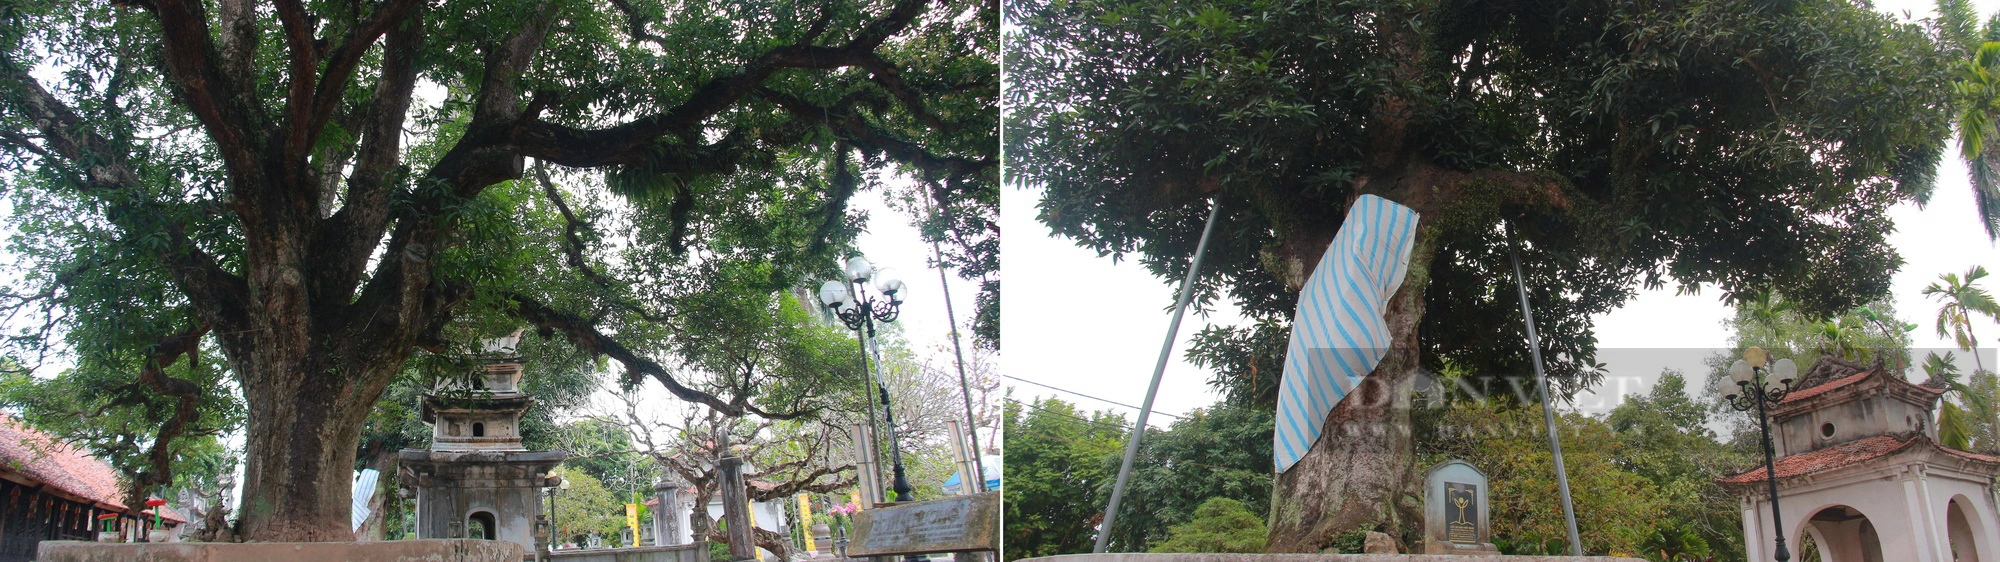 Bốn cây cổ thụ hàng trăm năm tuổi ở chùa Phổ Minh của Nam Định vẫn xanh tươi bốn mùa- Ảnh 2.